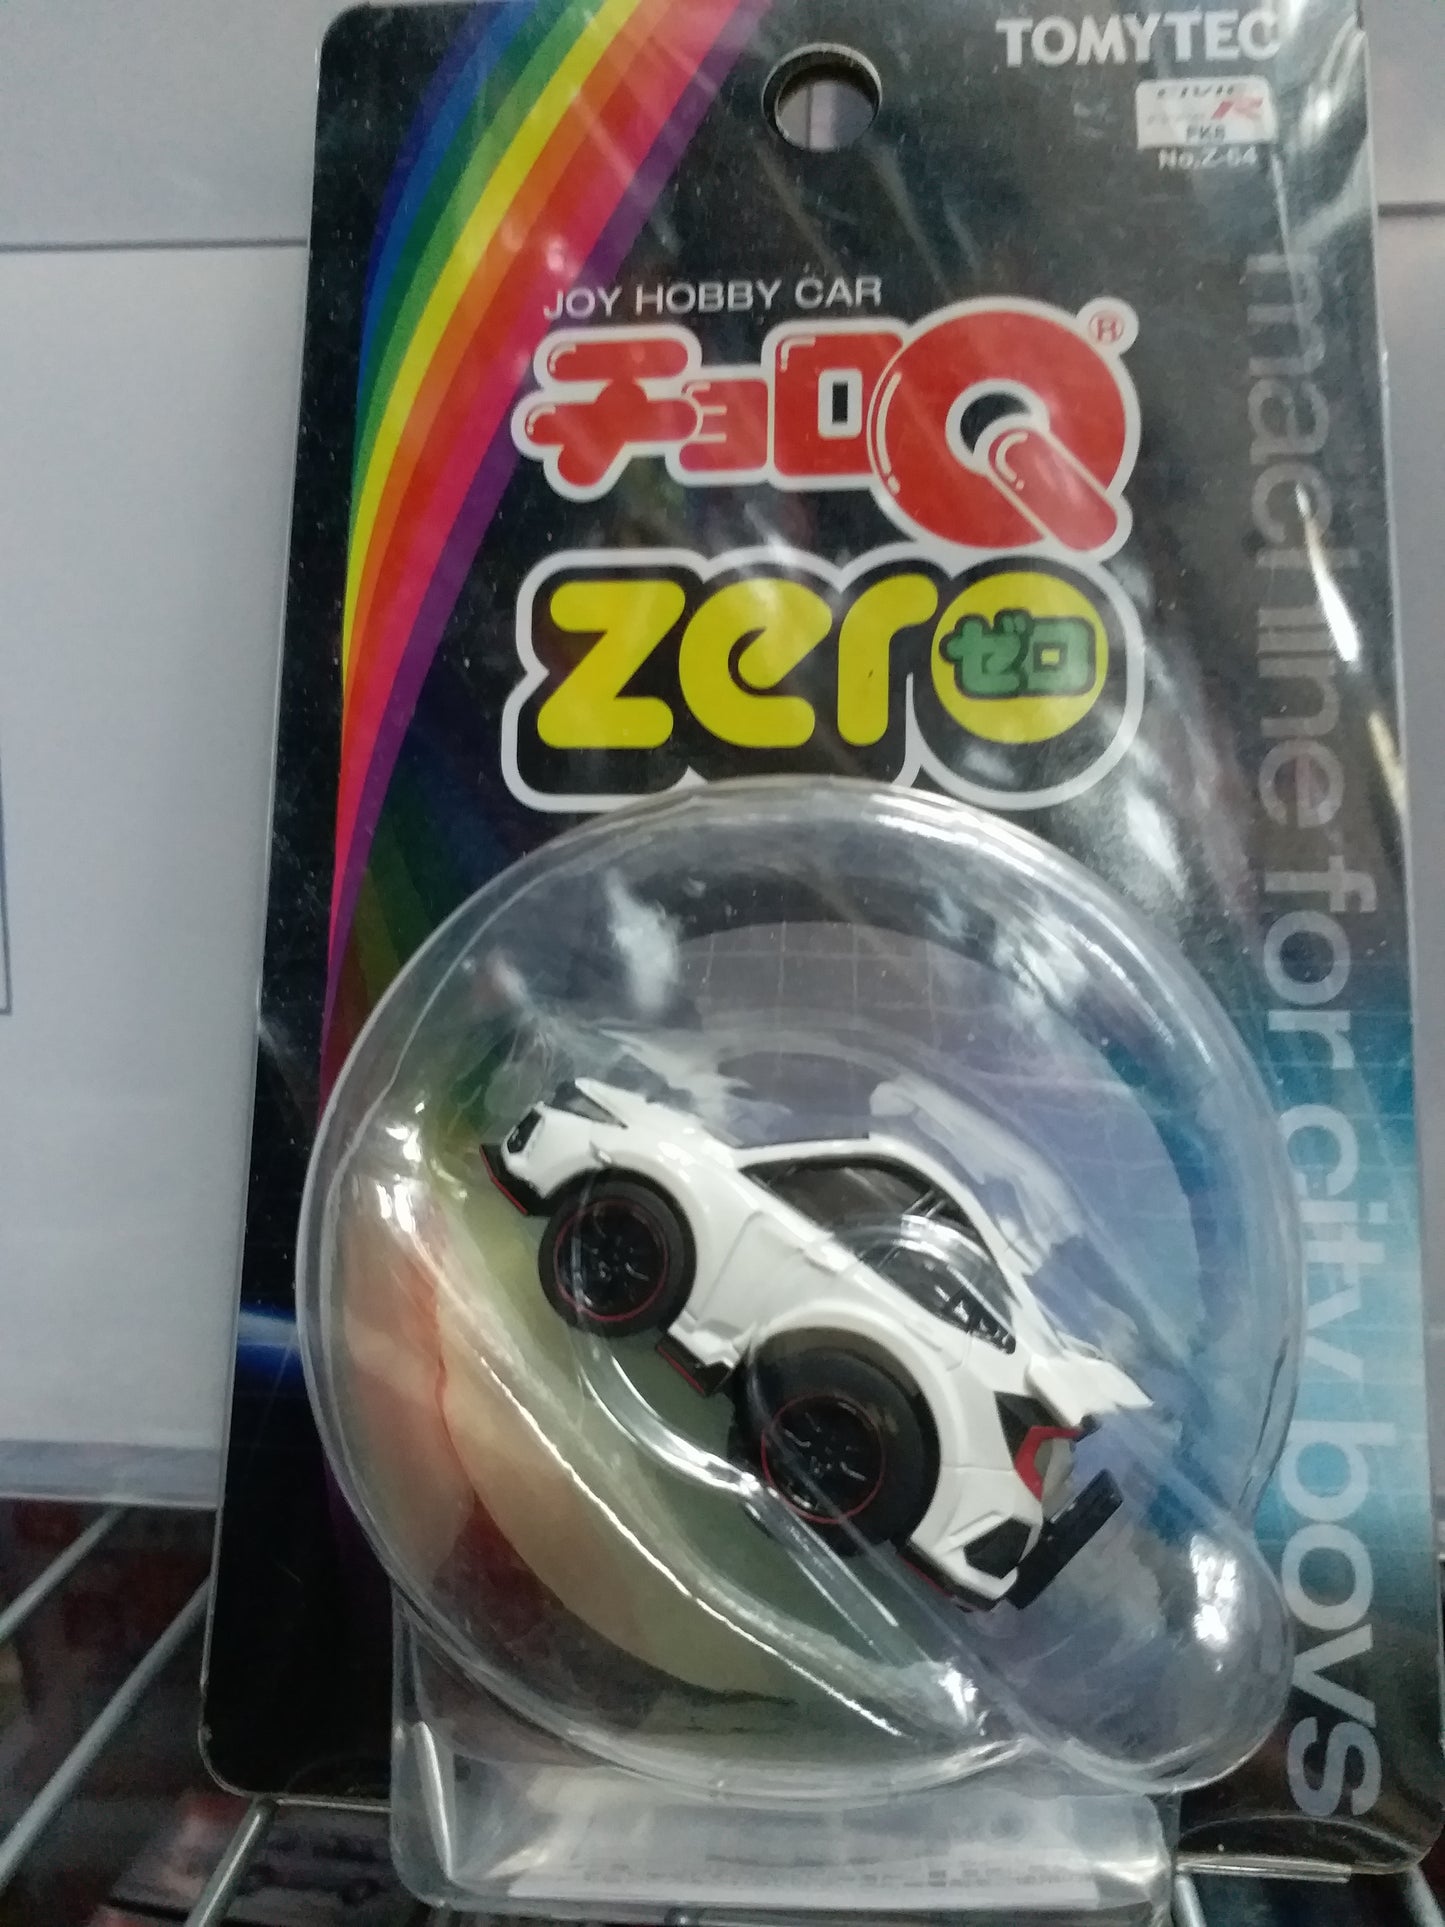 Tomytec Choro Q Zero Z-64a Civic Type R (FK8) (white)